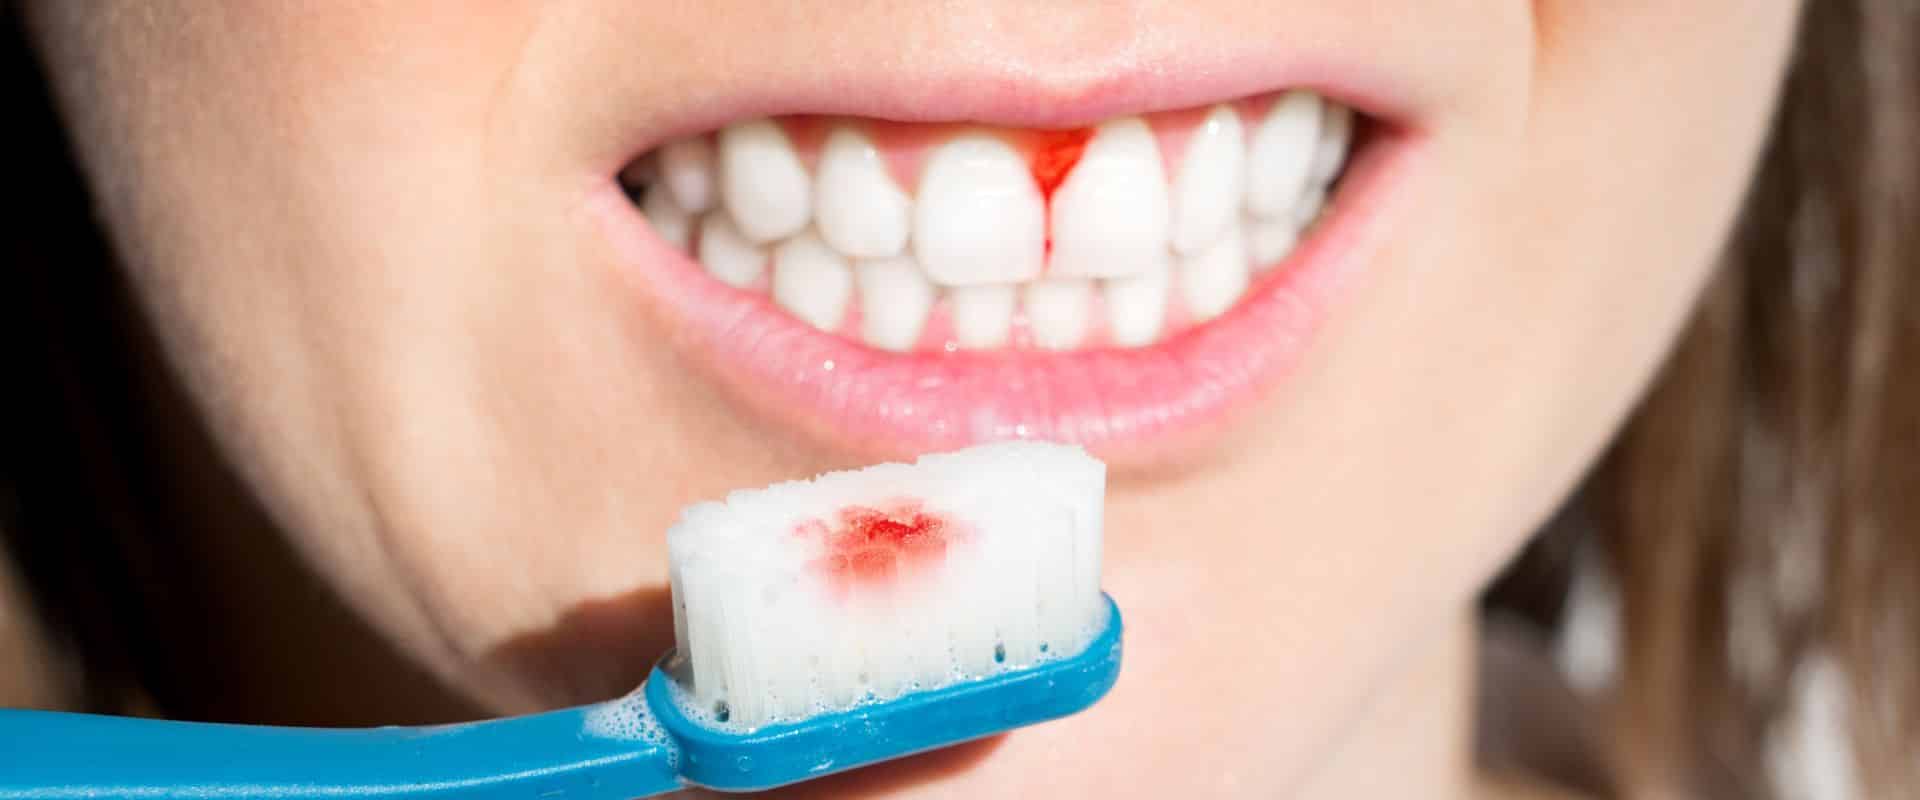 Sundt tandkød bløder ikke